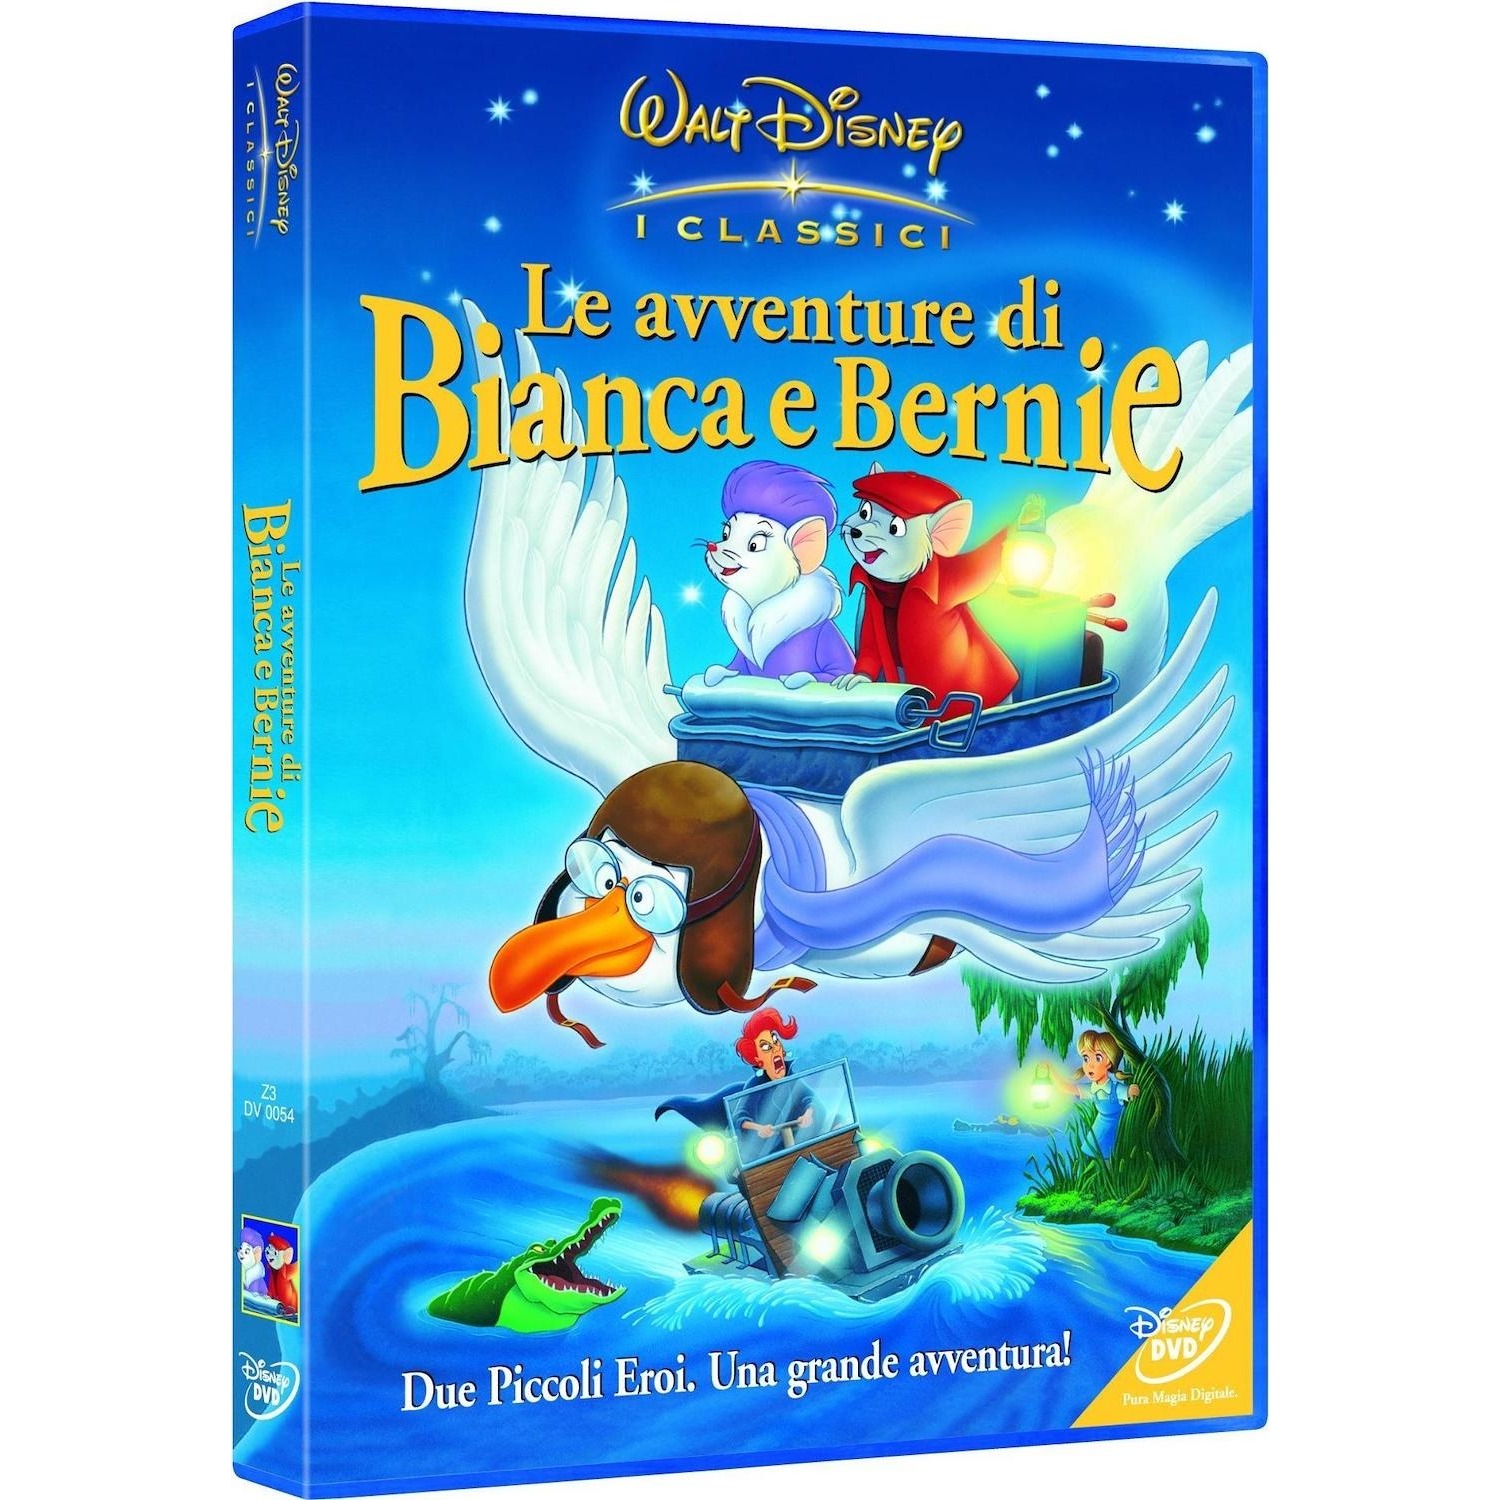 Immagine per DVD Le avventure di Bianca e Bernie da DIMOStore